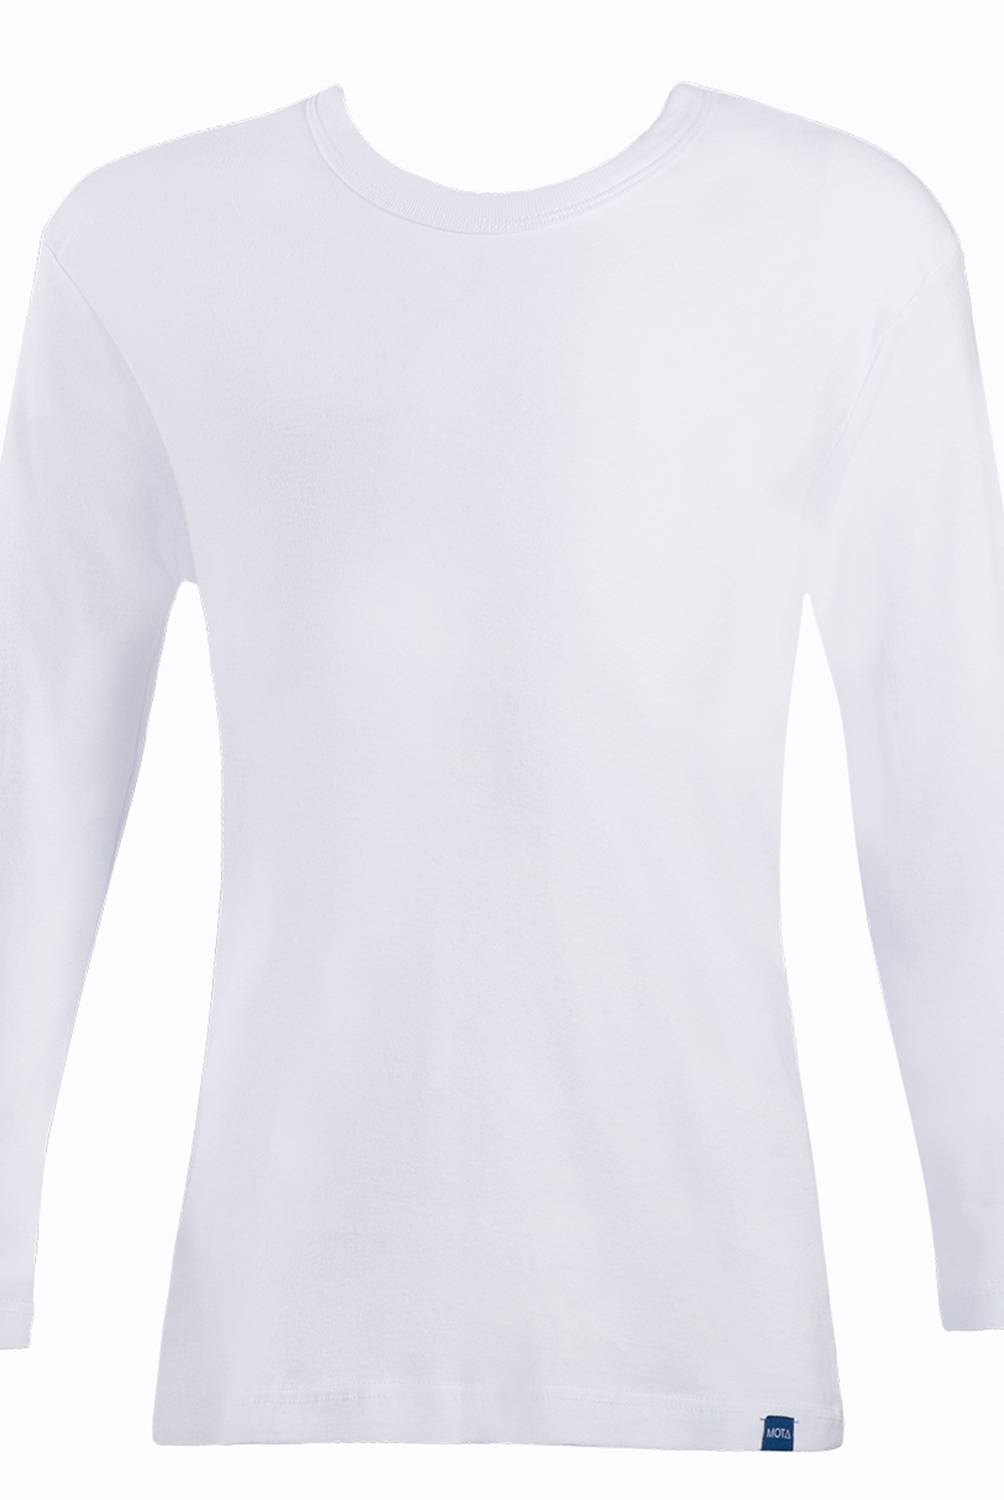 MOTA - Camiseta Unisex